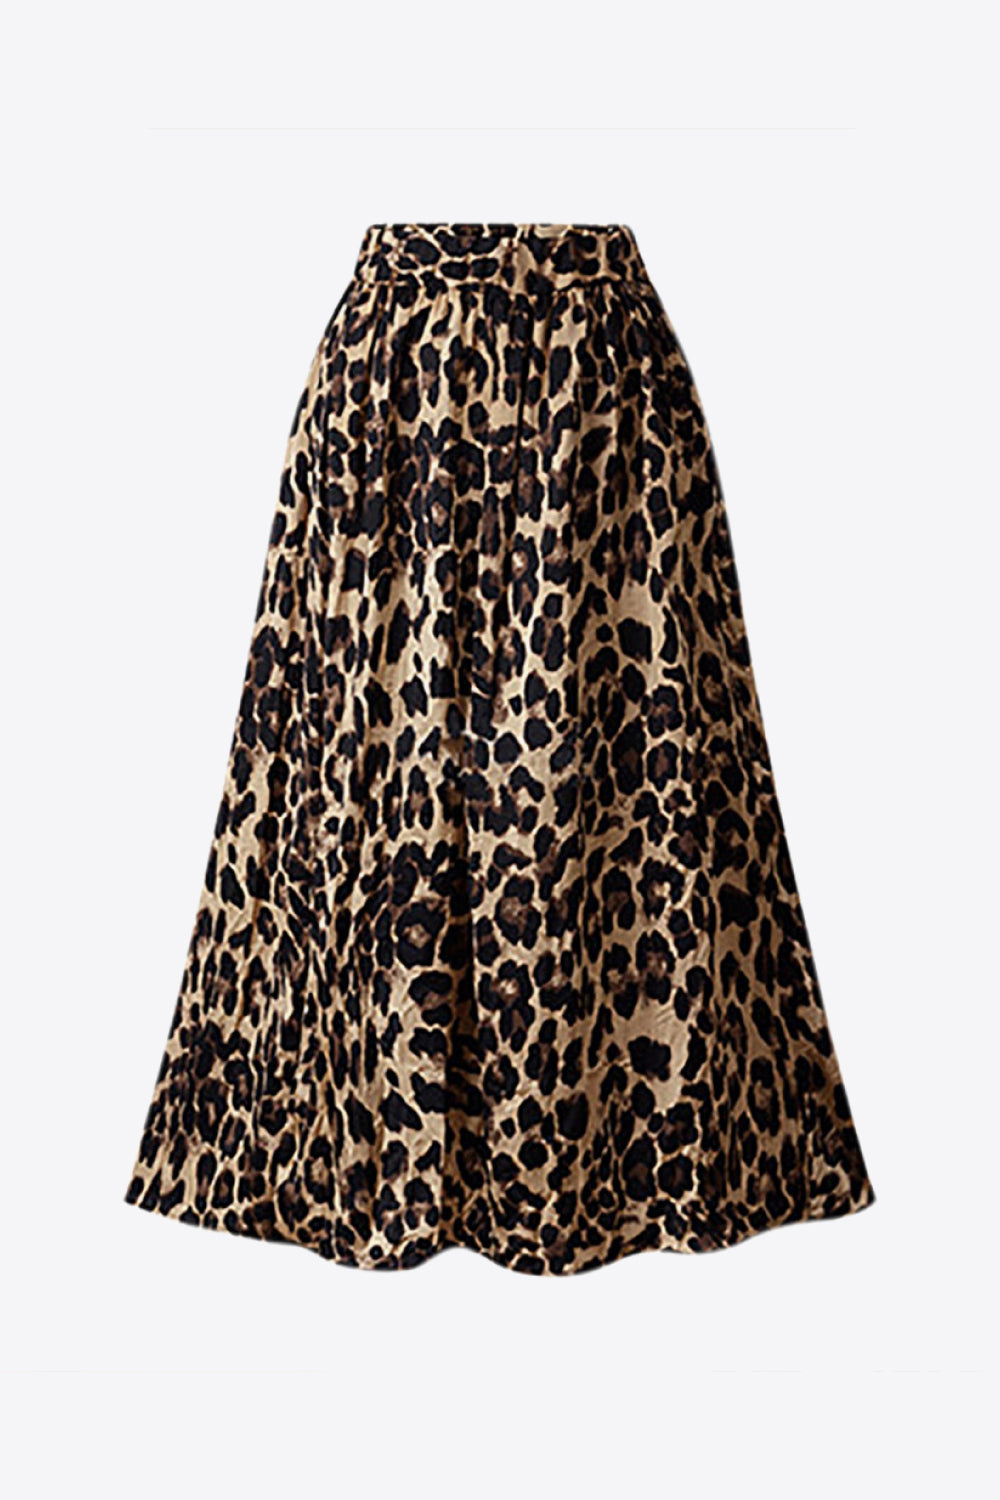 Plus Size Leopard Print Midi Skirt (TB7) T - Deals DejaVu